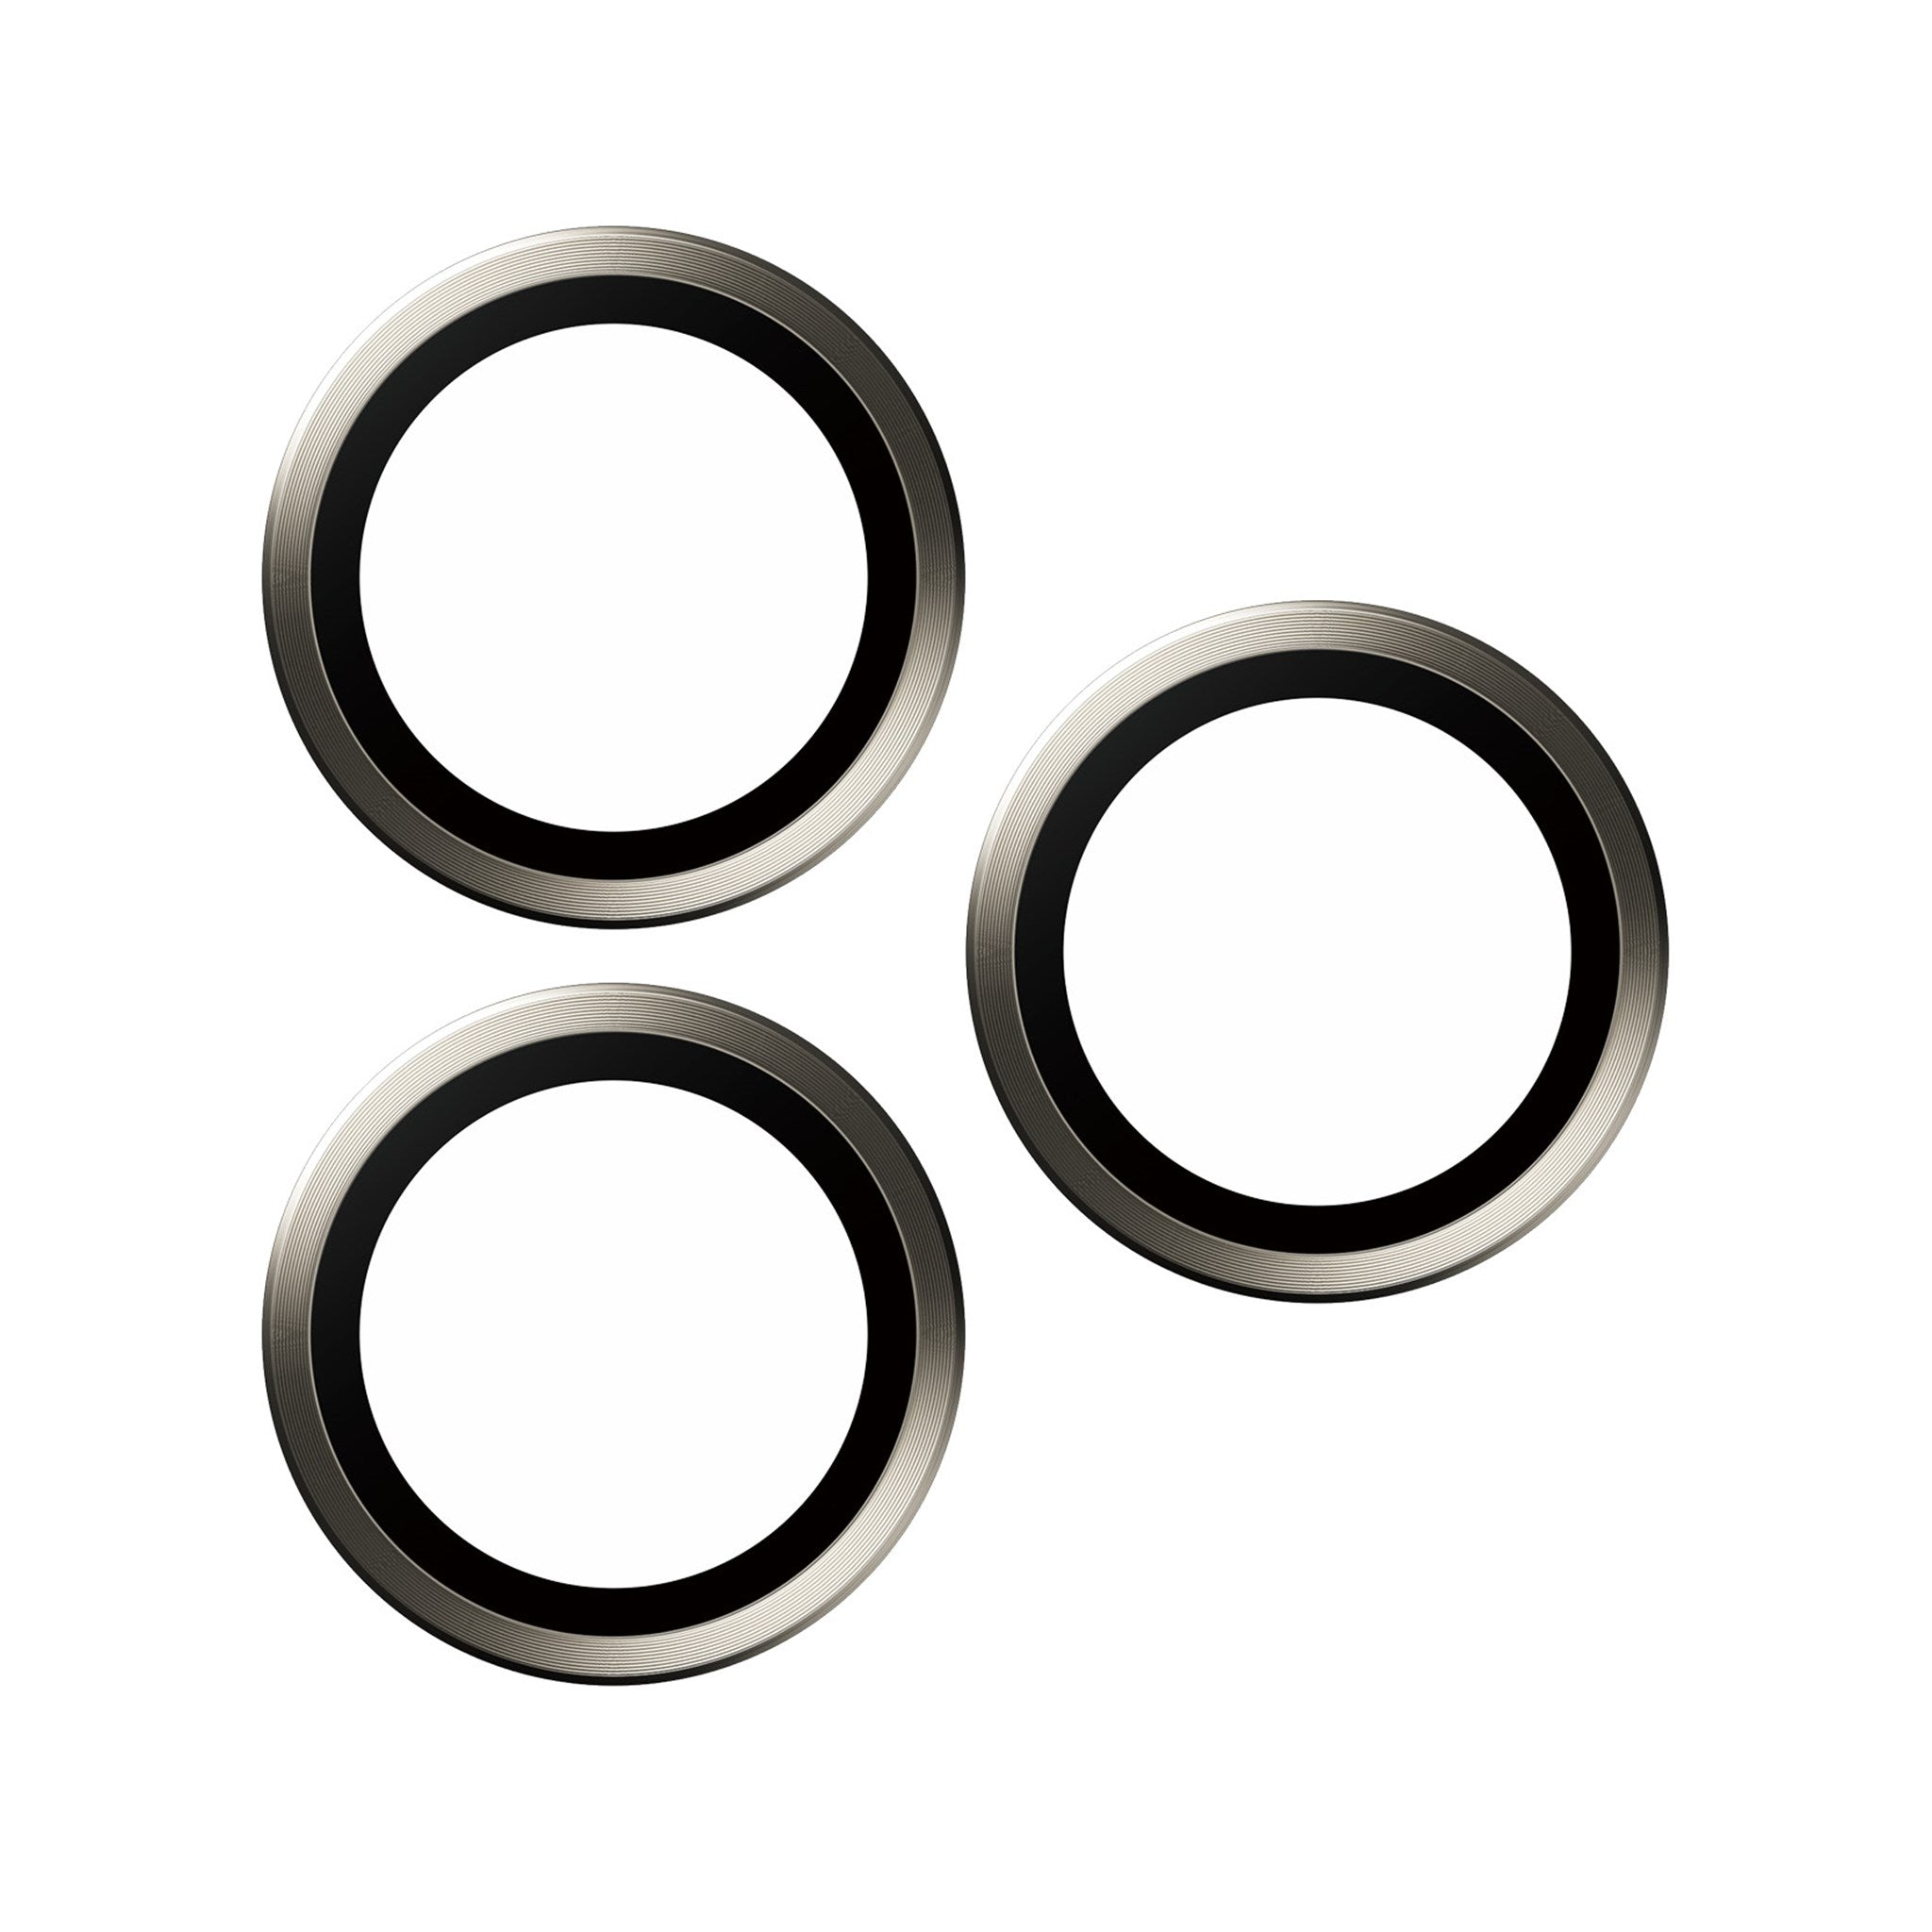 PANZERGLASS Hoops™ Kameraschutz | Natürlich Pro | Max) Pro Titanium 15 Kameraschutz(für 15 iPhone Apple